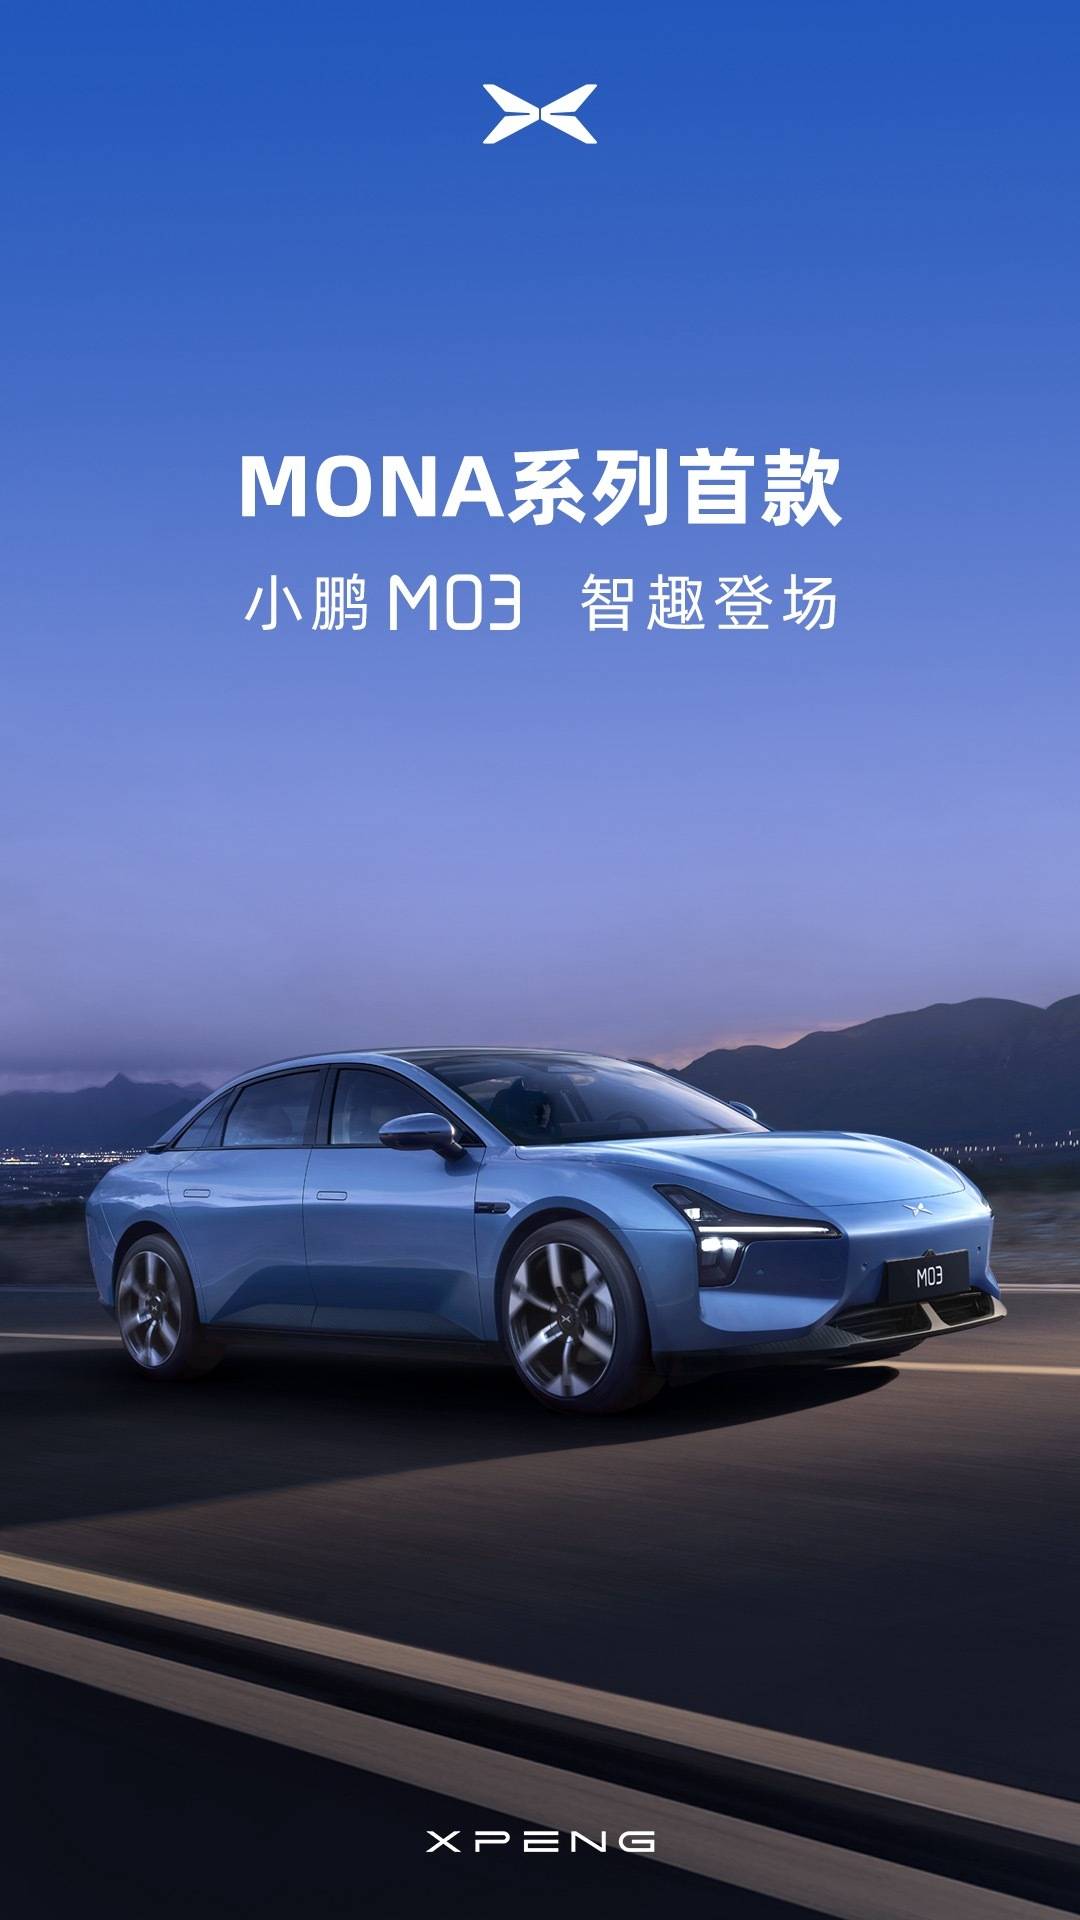 小鹏莫娜首款车型小鹏M03官图发布_搜狐汽车_ Sohu.com